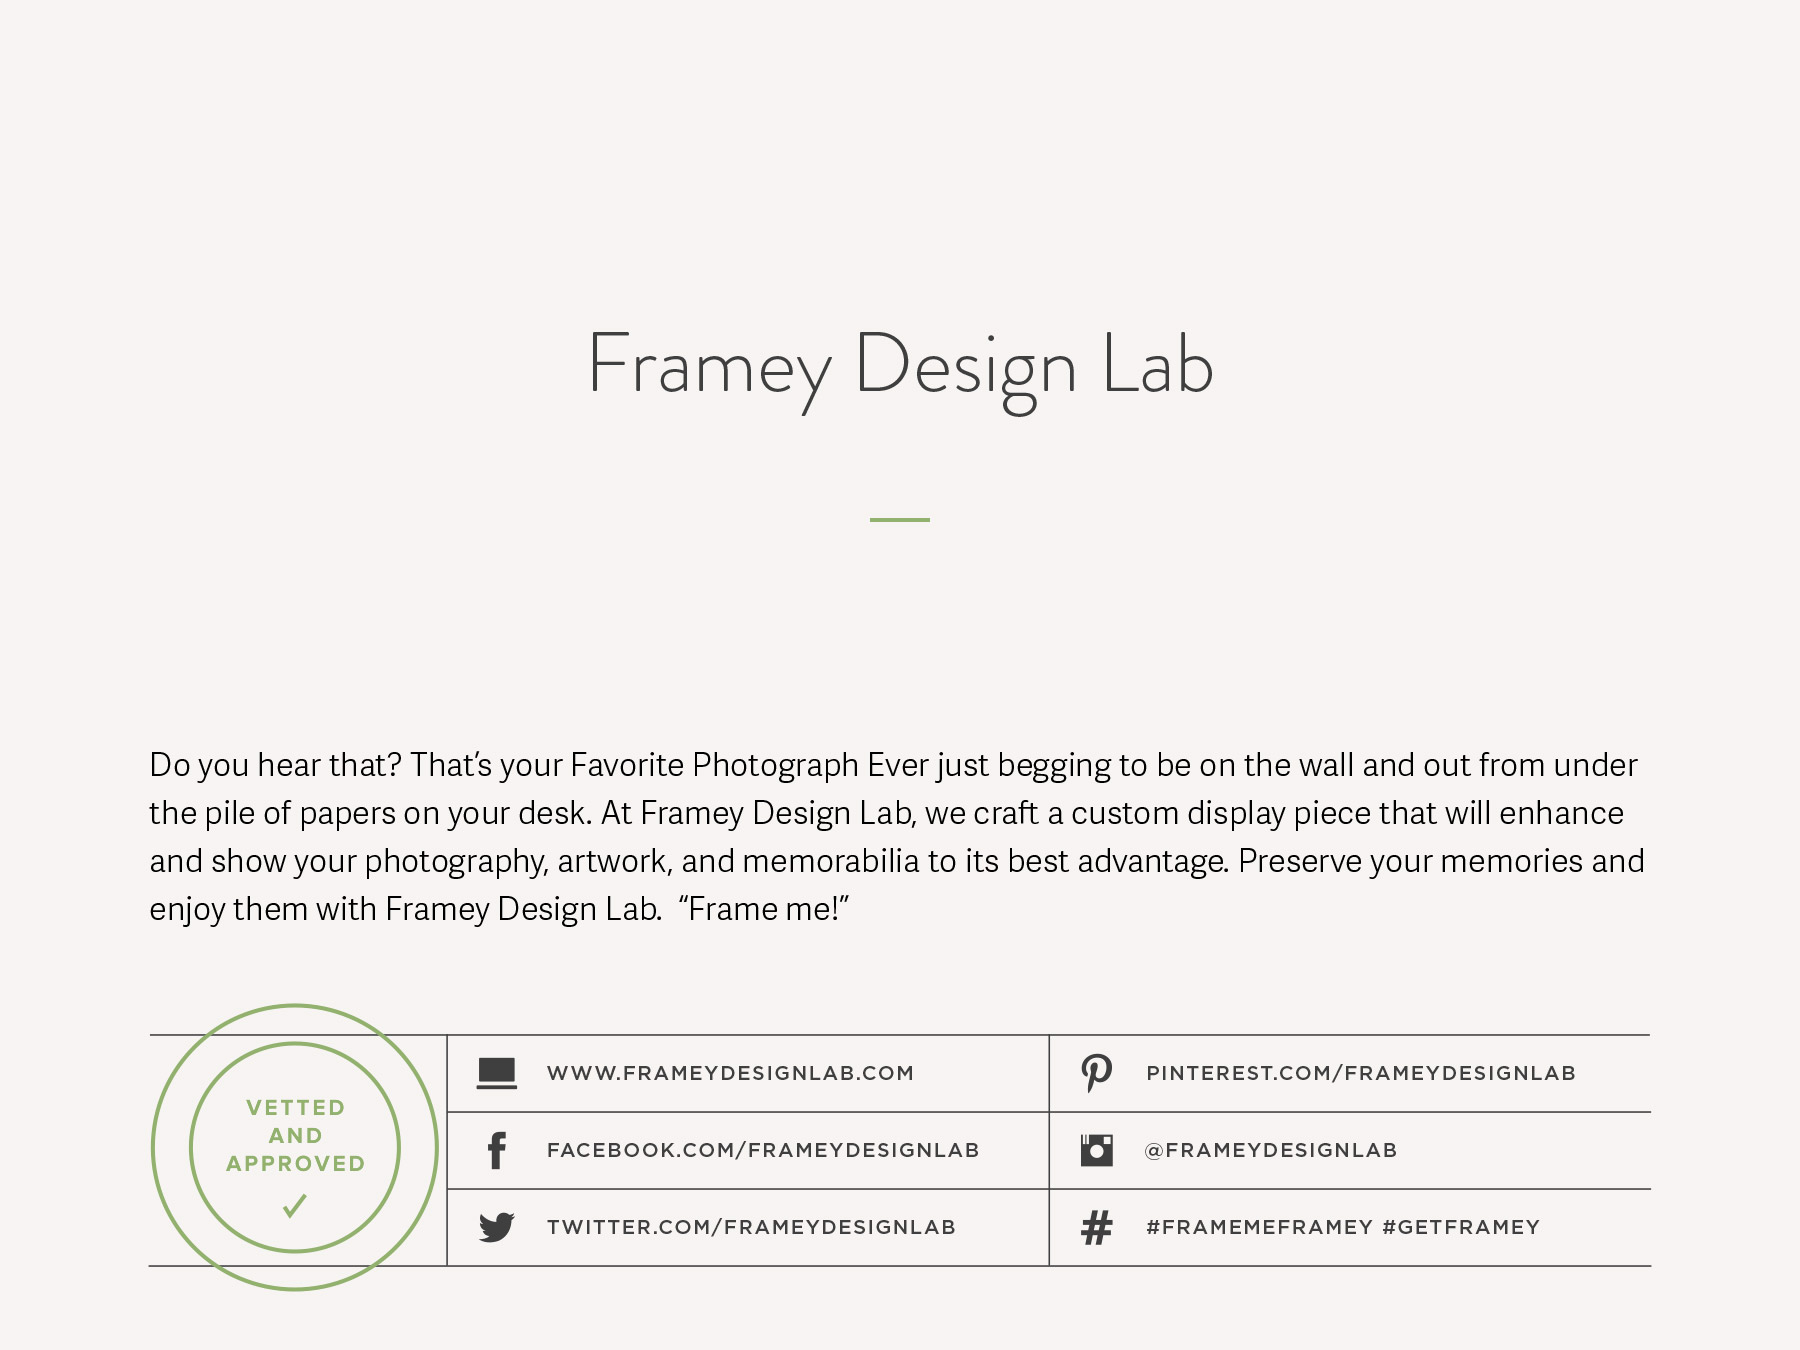 Small business company naming for a custom frame designer